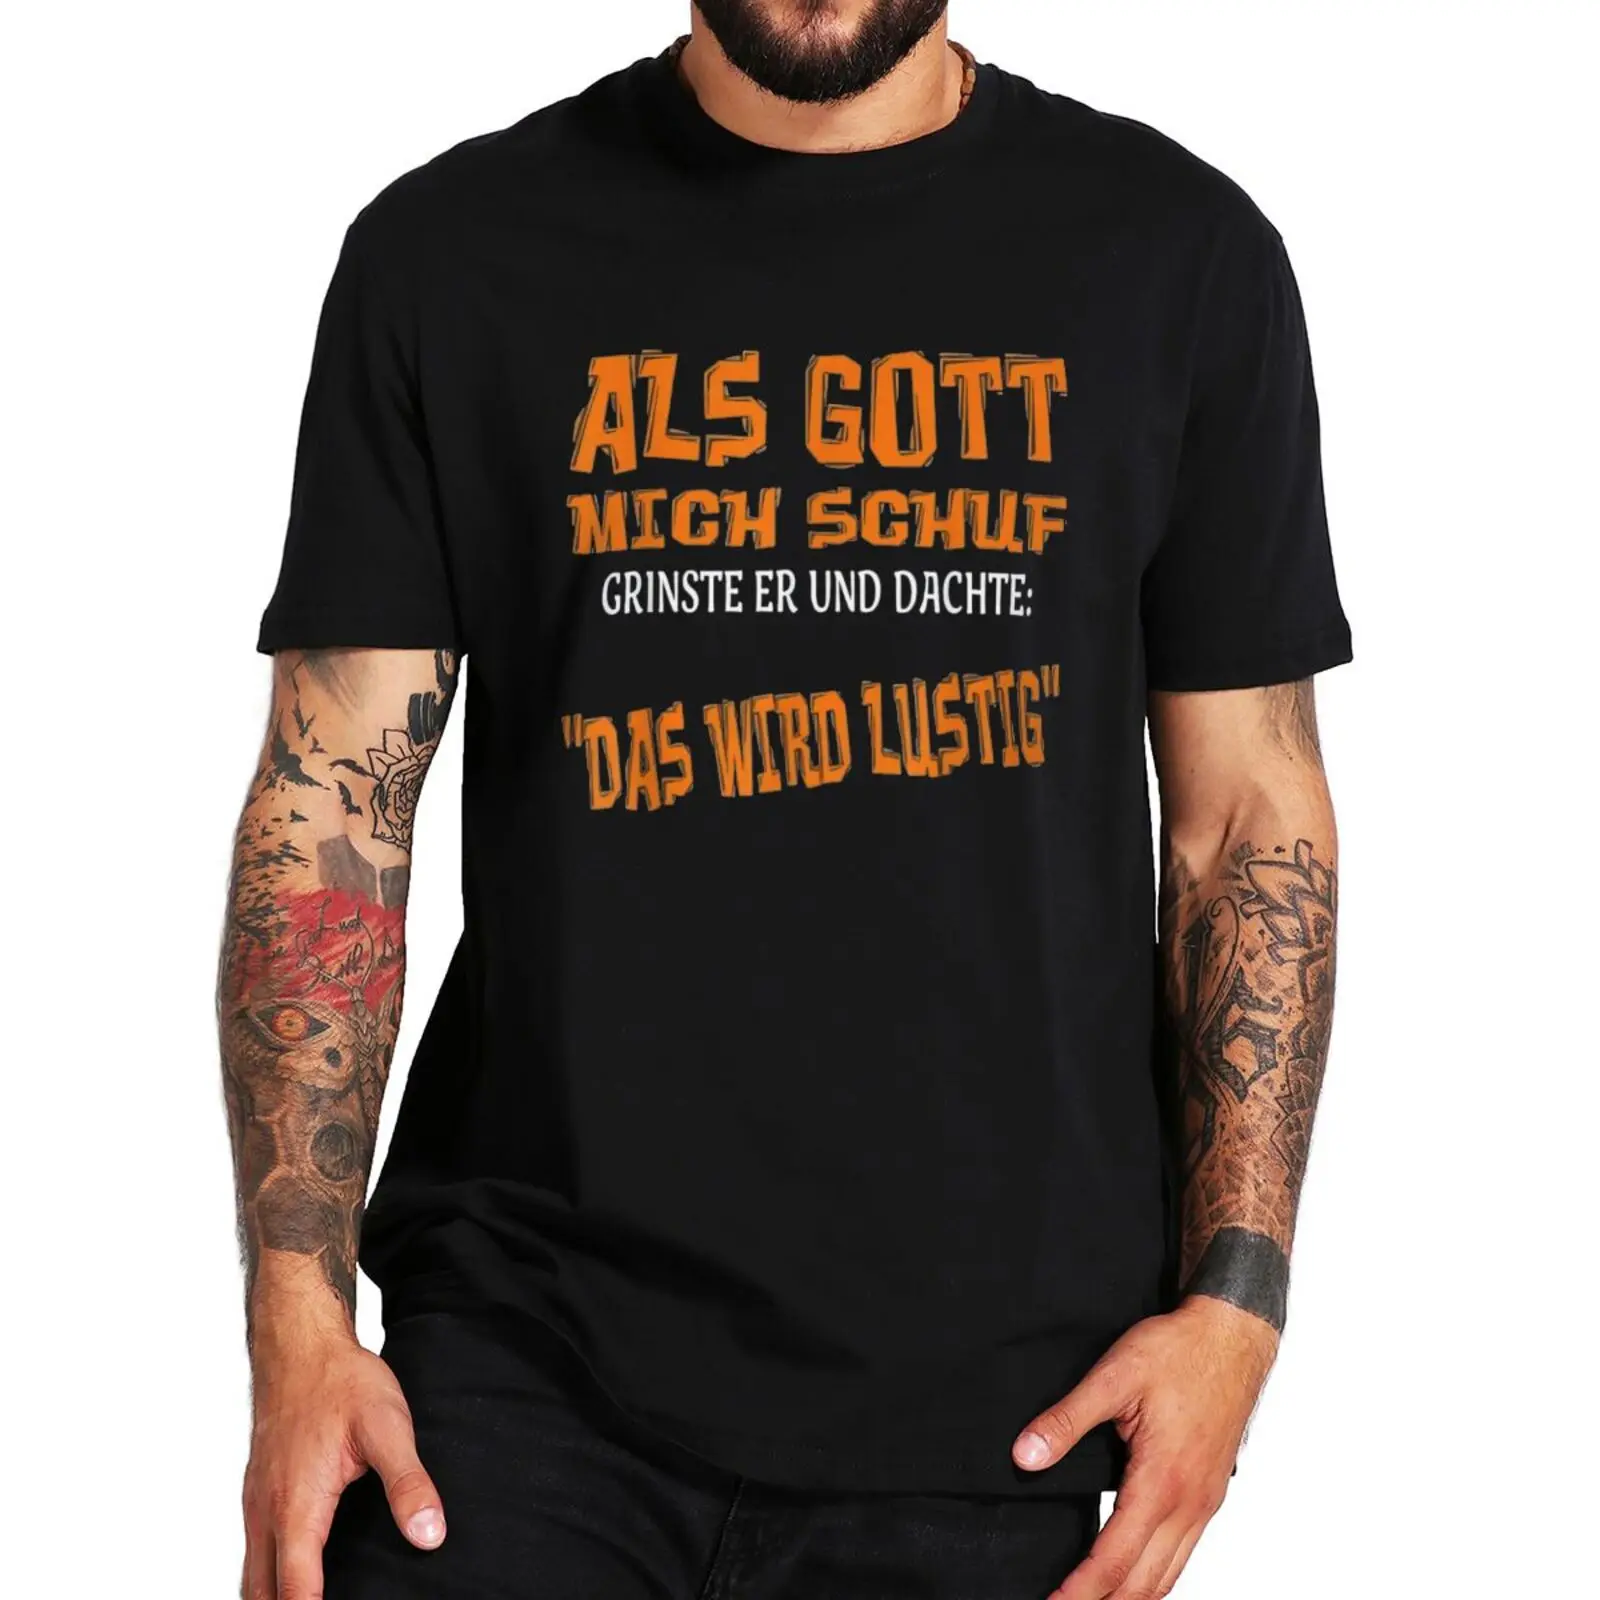 

Футболка с надписью «Когда Бог сделал меня», он улыбнулся», с немецким текстом, саркастическая смешная цитата, футболка из 100% хлопка, европейский размер, Мужская футболка